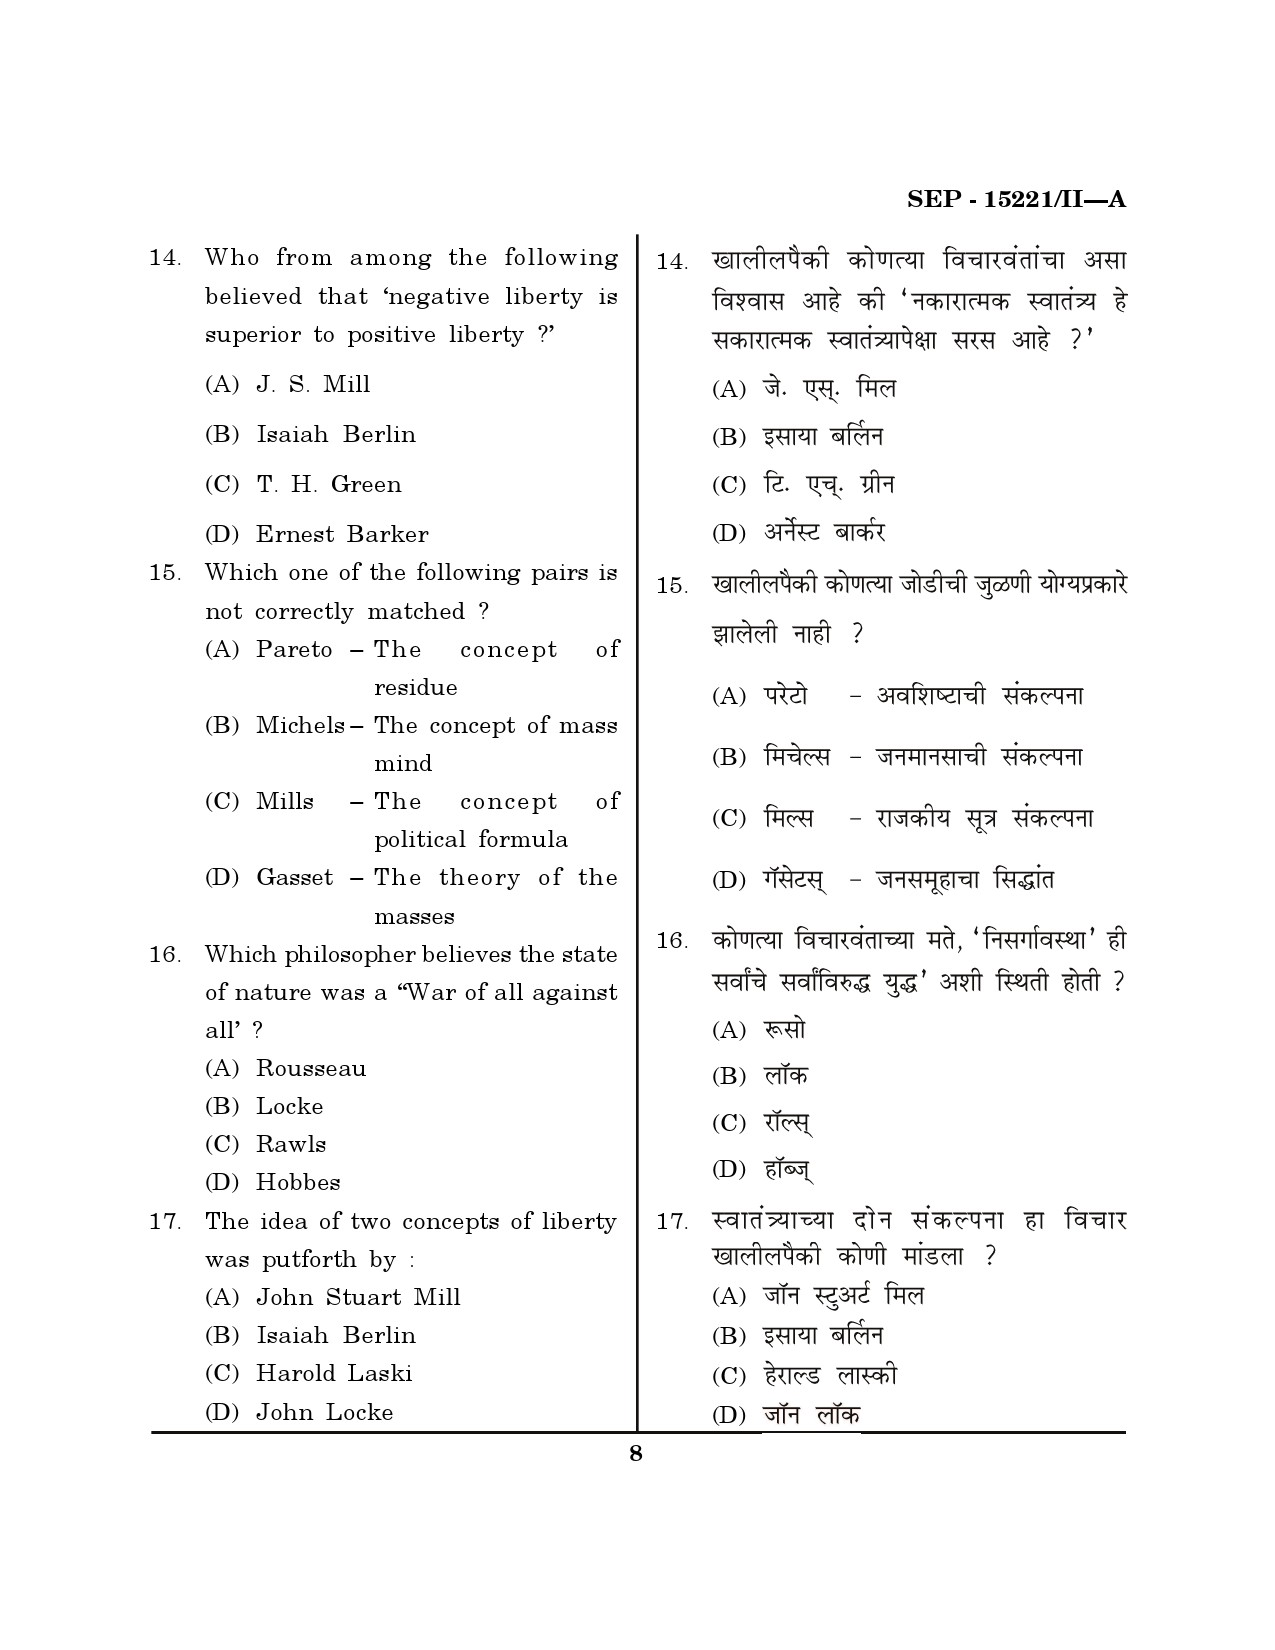 Maharashtra SET Political Science Exam Question Paper September 2021 7